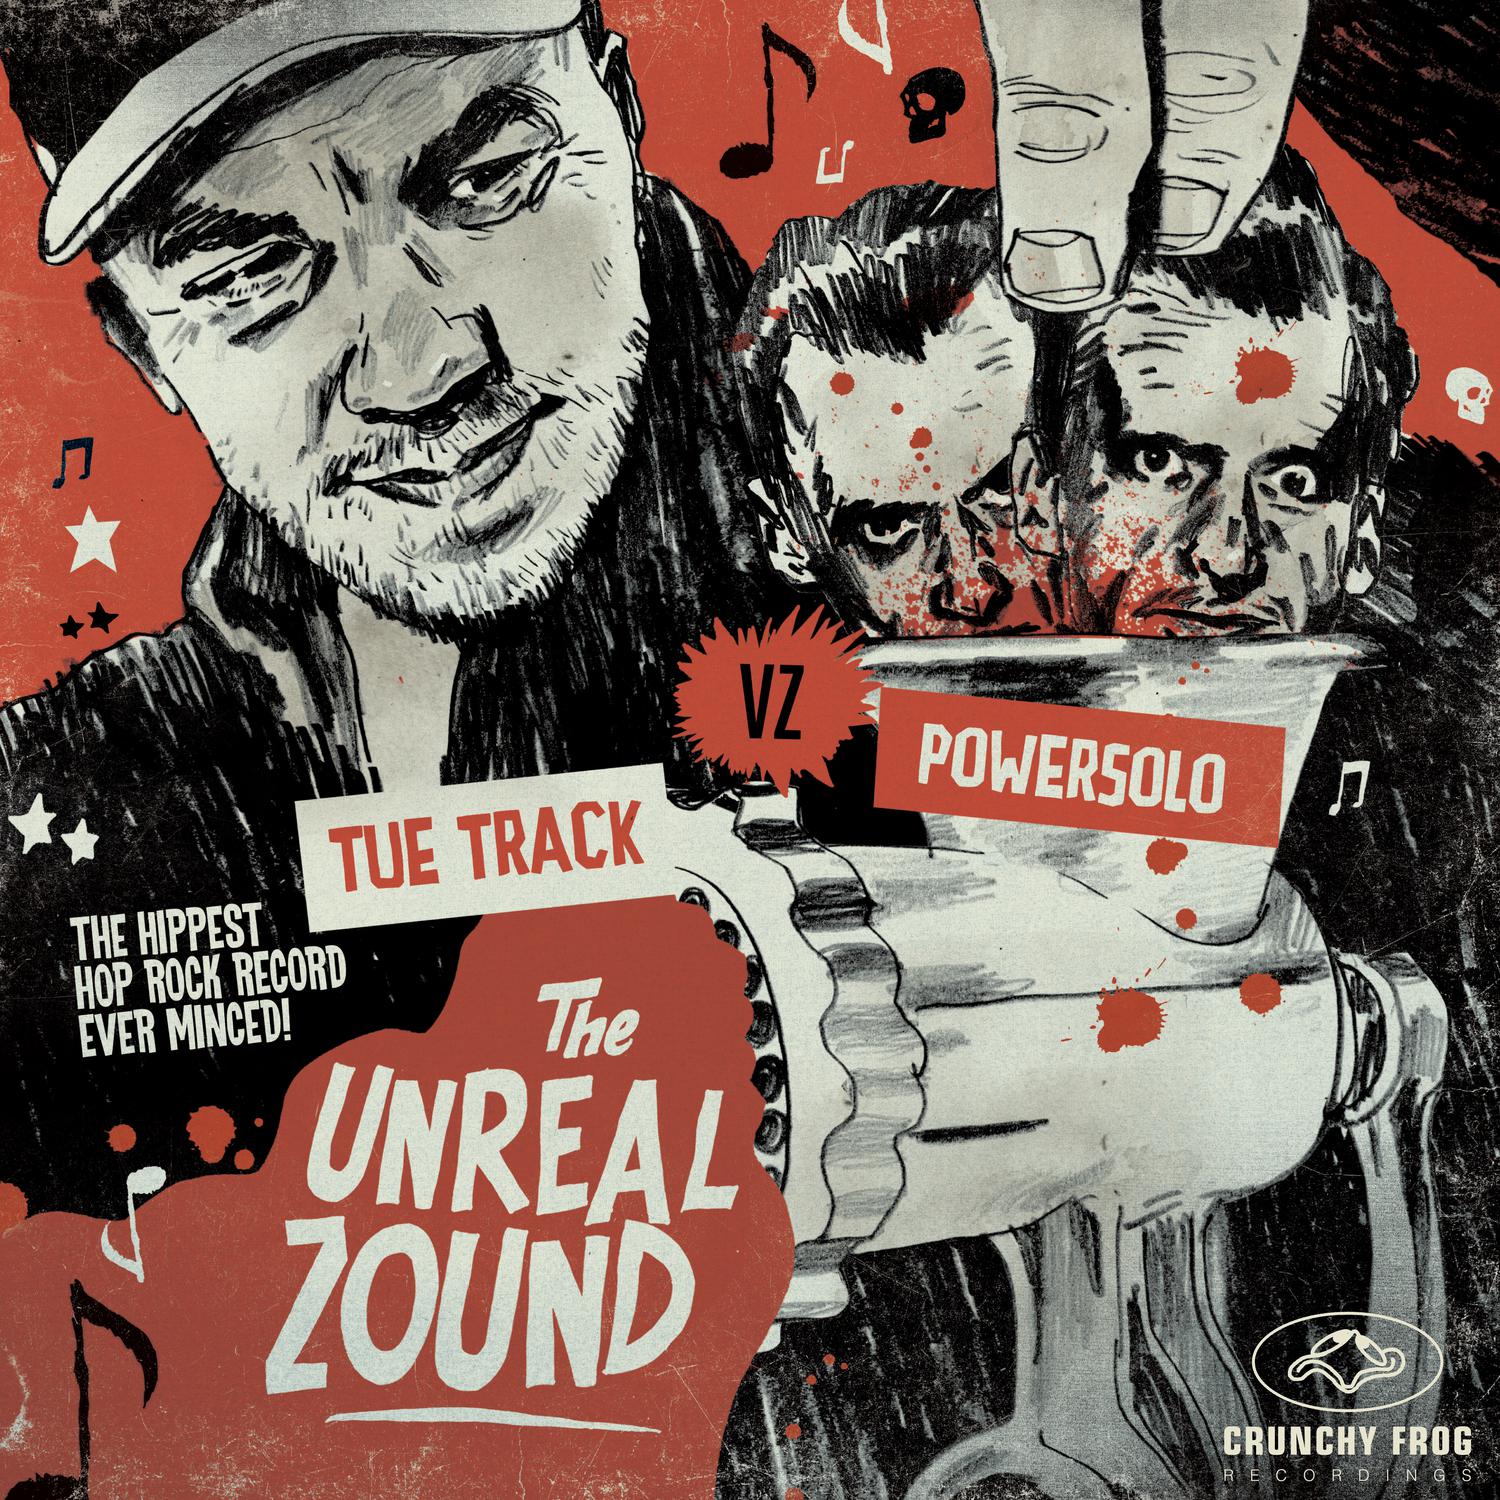 The Unreal Zound (Tue Track vz. Powersolo)